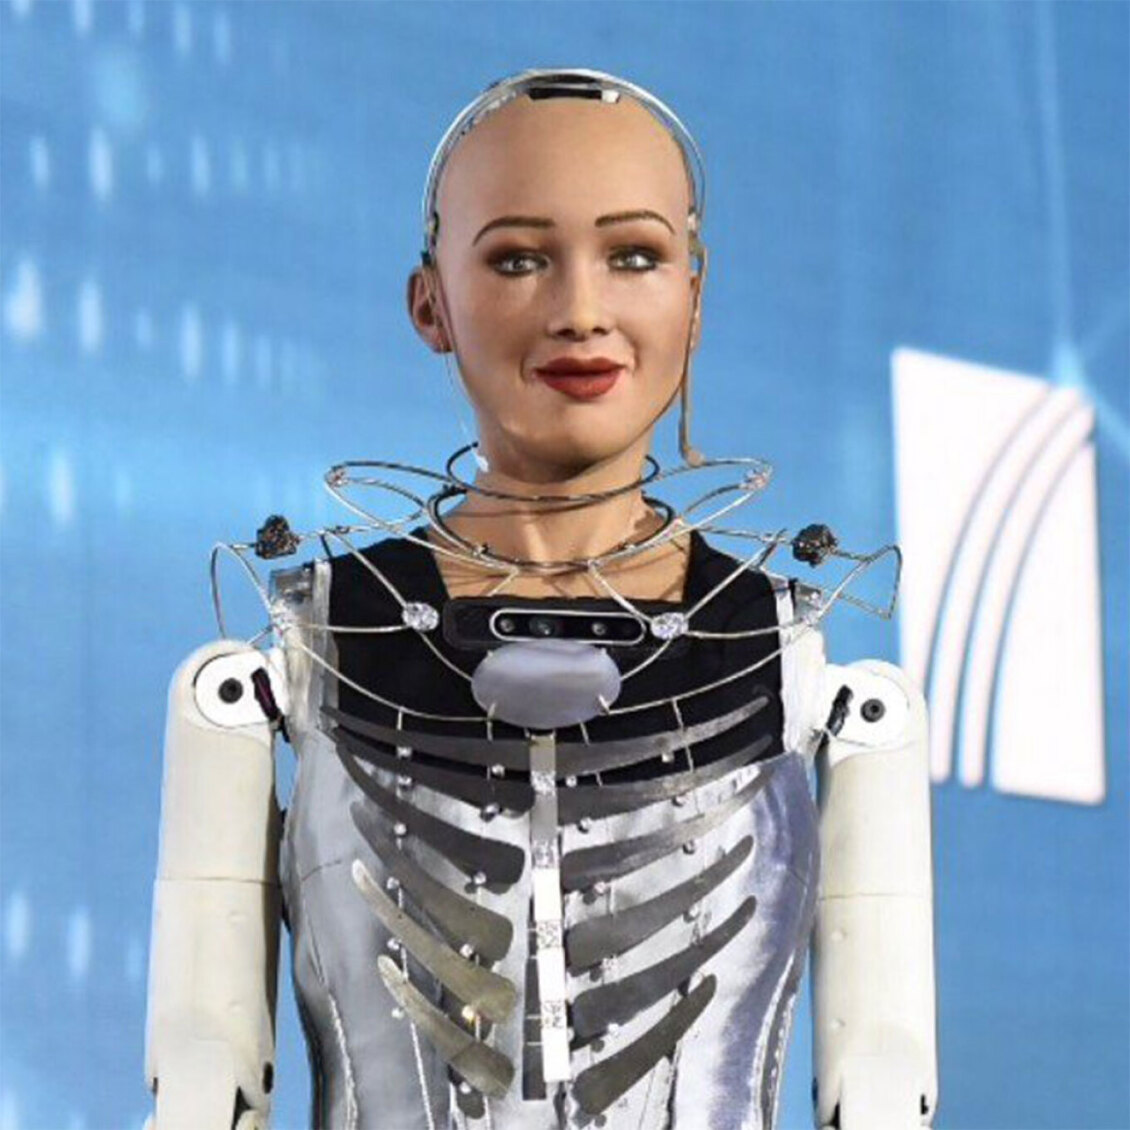 κρήτη: στο ηράκλειο η σοφία, το διασημότερο ανθρωπόμορφο ρομπότ